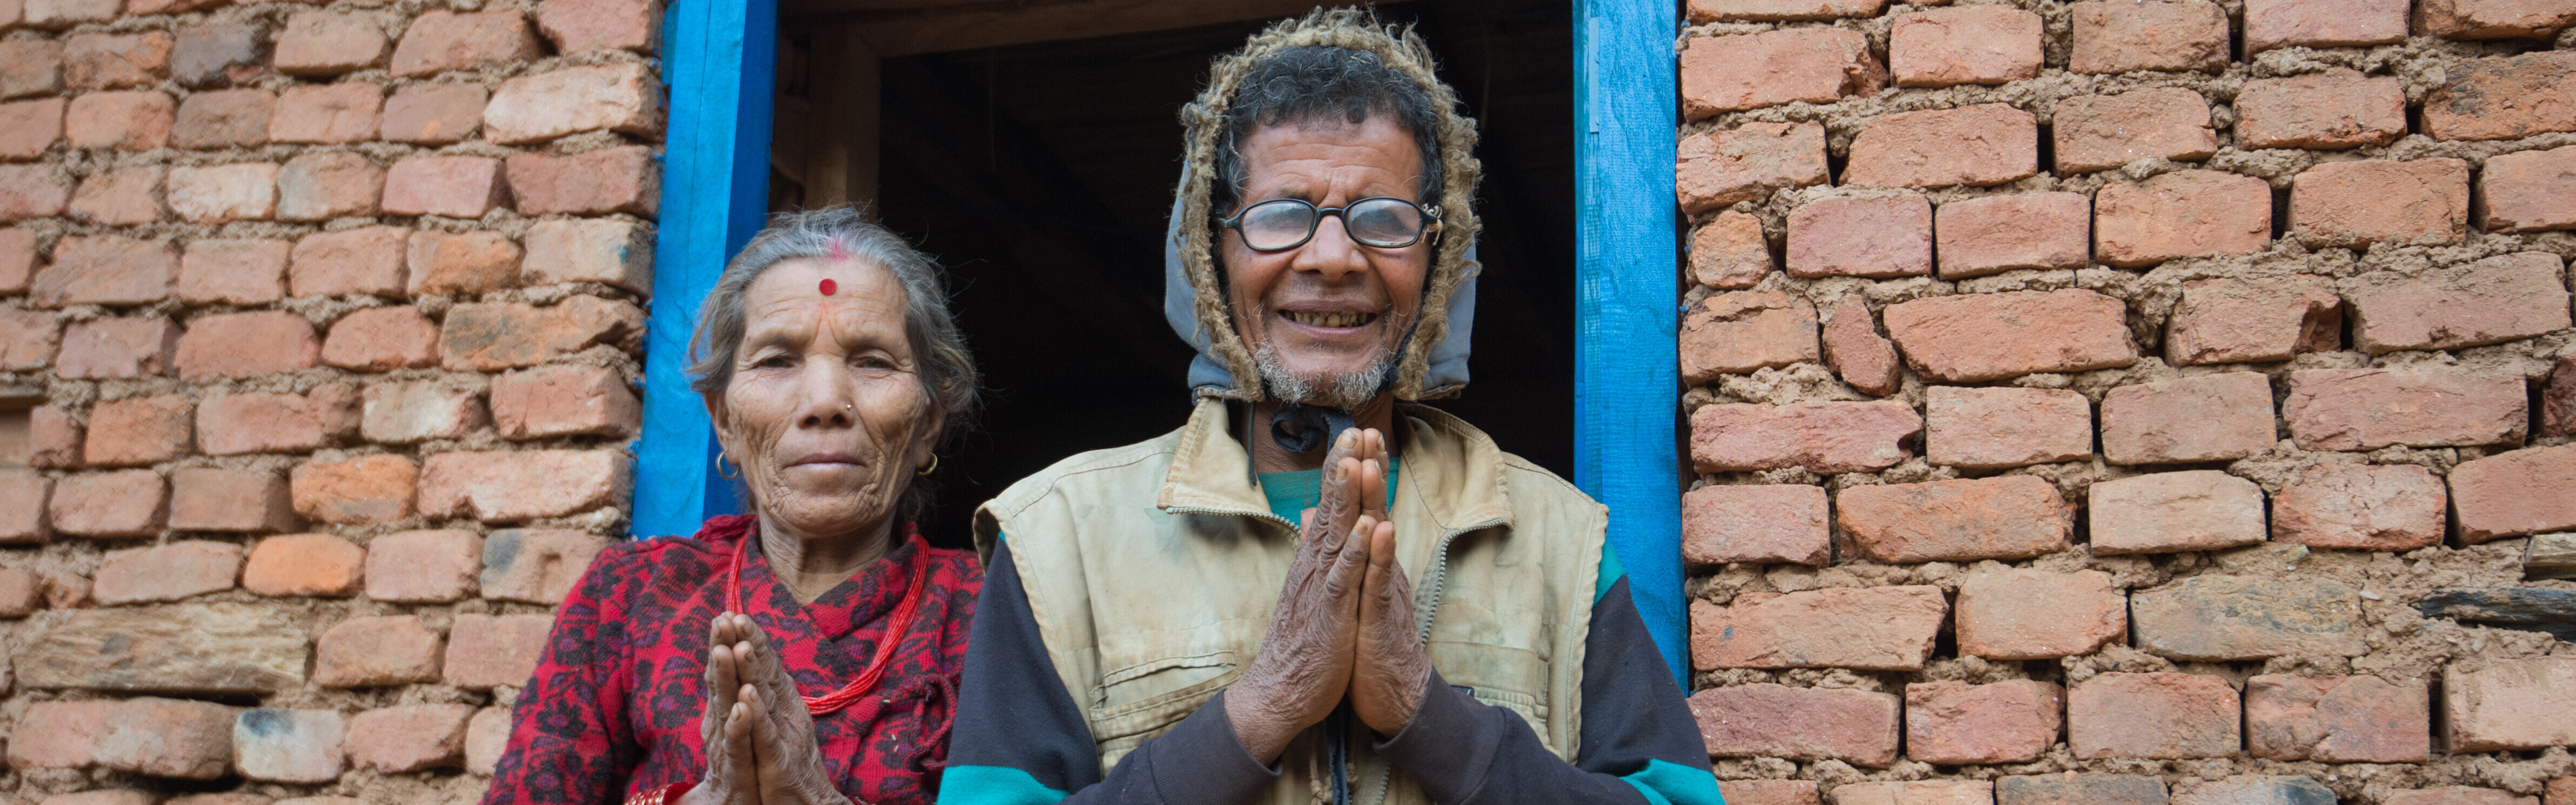 Ein Jahr ist seit dem Erdbeben in Nepal vergangen und es bleibt einiges zu tun, doch es wurde auch vieles erreicht. Unsere Bündnisorganisationen unterstützen die Betroffenen weiter beim Wiederaufbau, nachdem sie nach dem Beben Soforthilfe geleistet habe